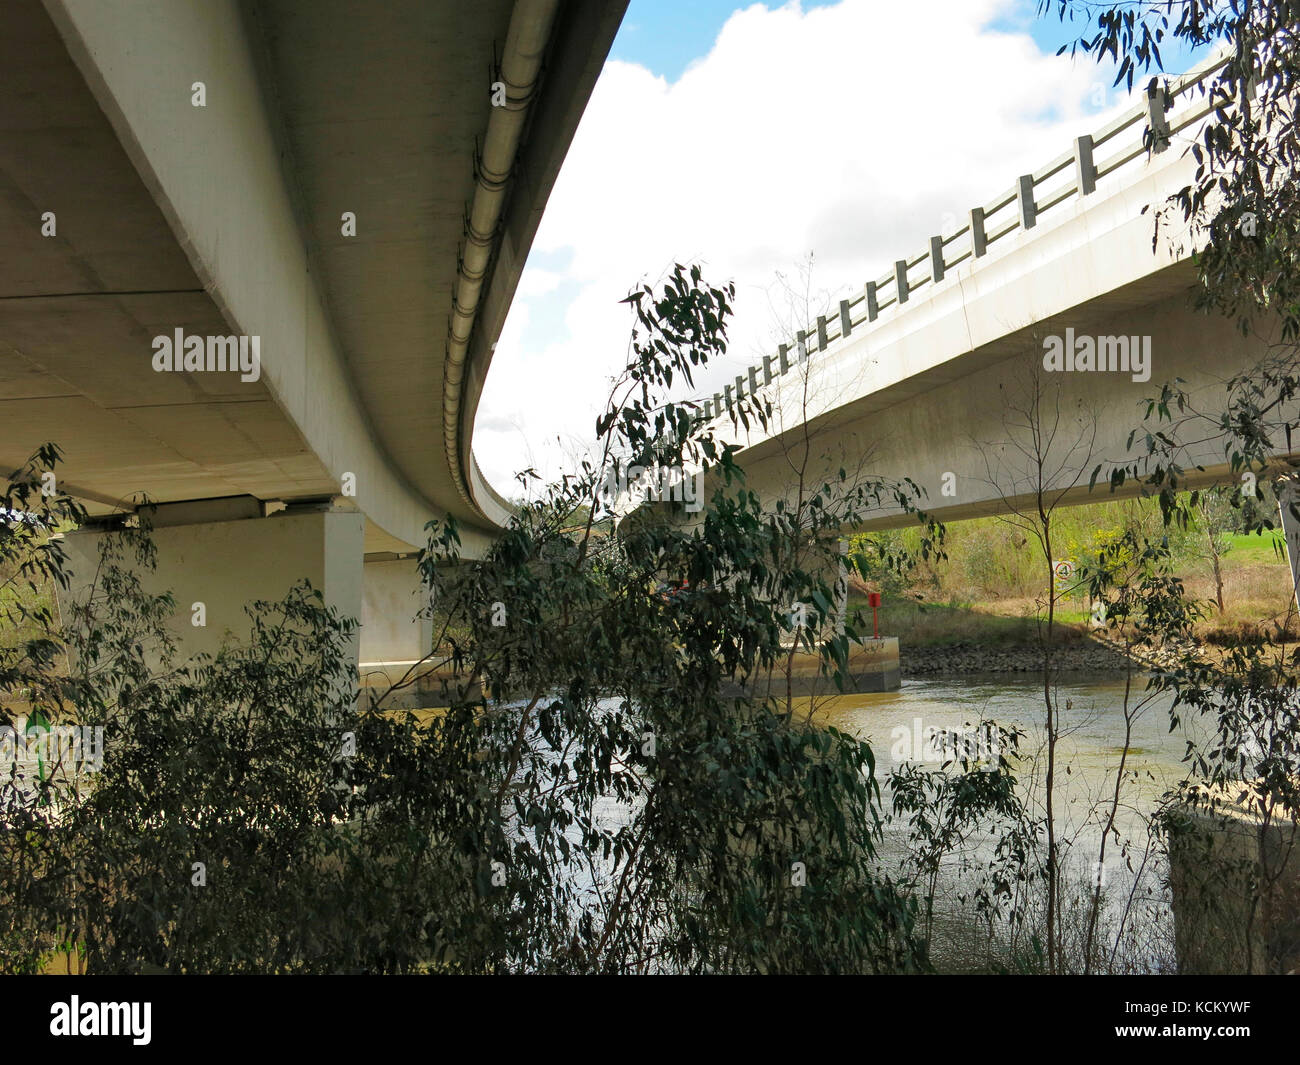 Les ponts Spirit of Progress qui lonbent la route à double chaussée Hume et traversent la rivière Murray. Albury-Wodonga, Victoria, Australie Banque D'Images